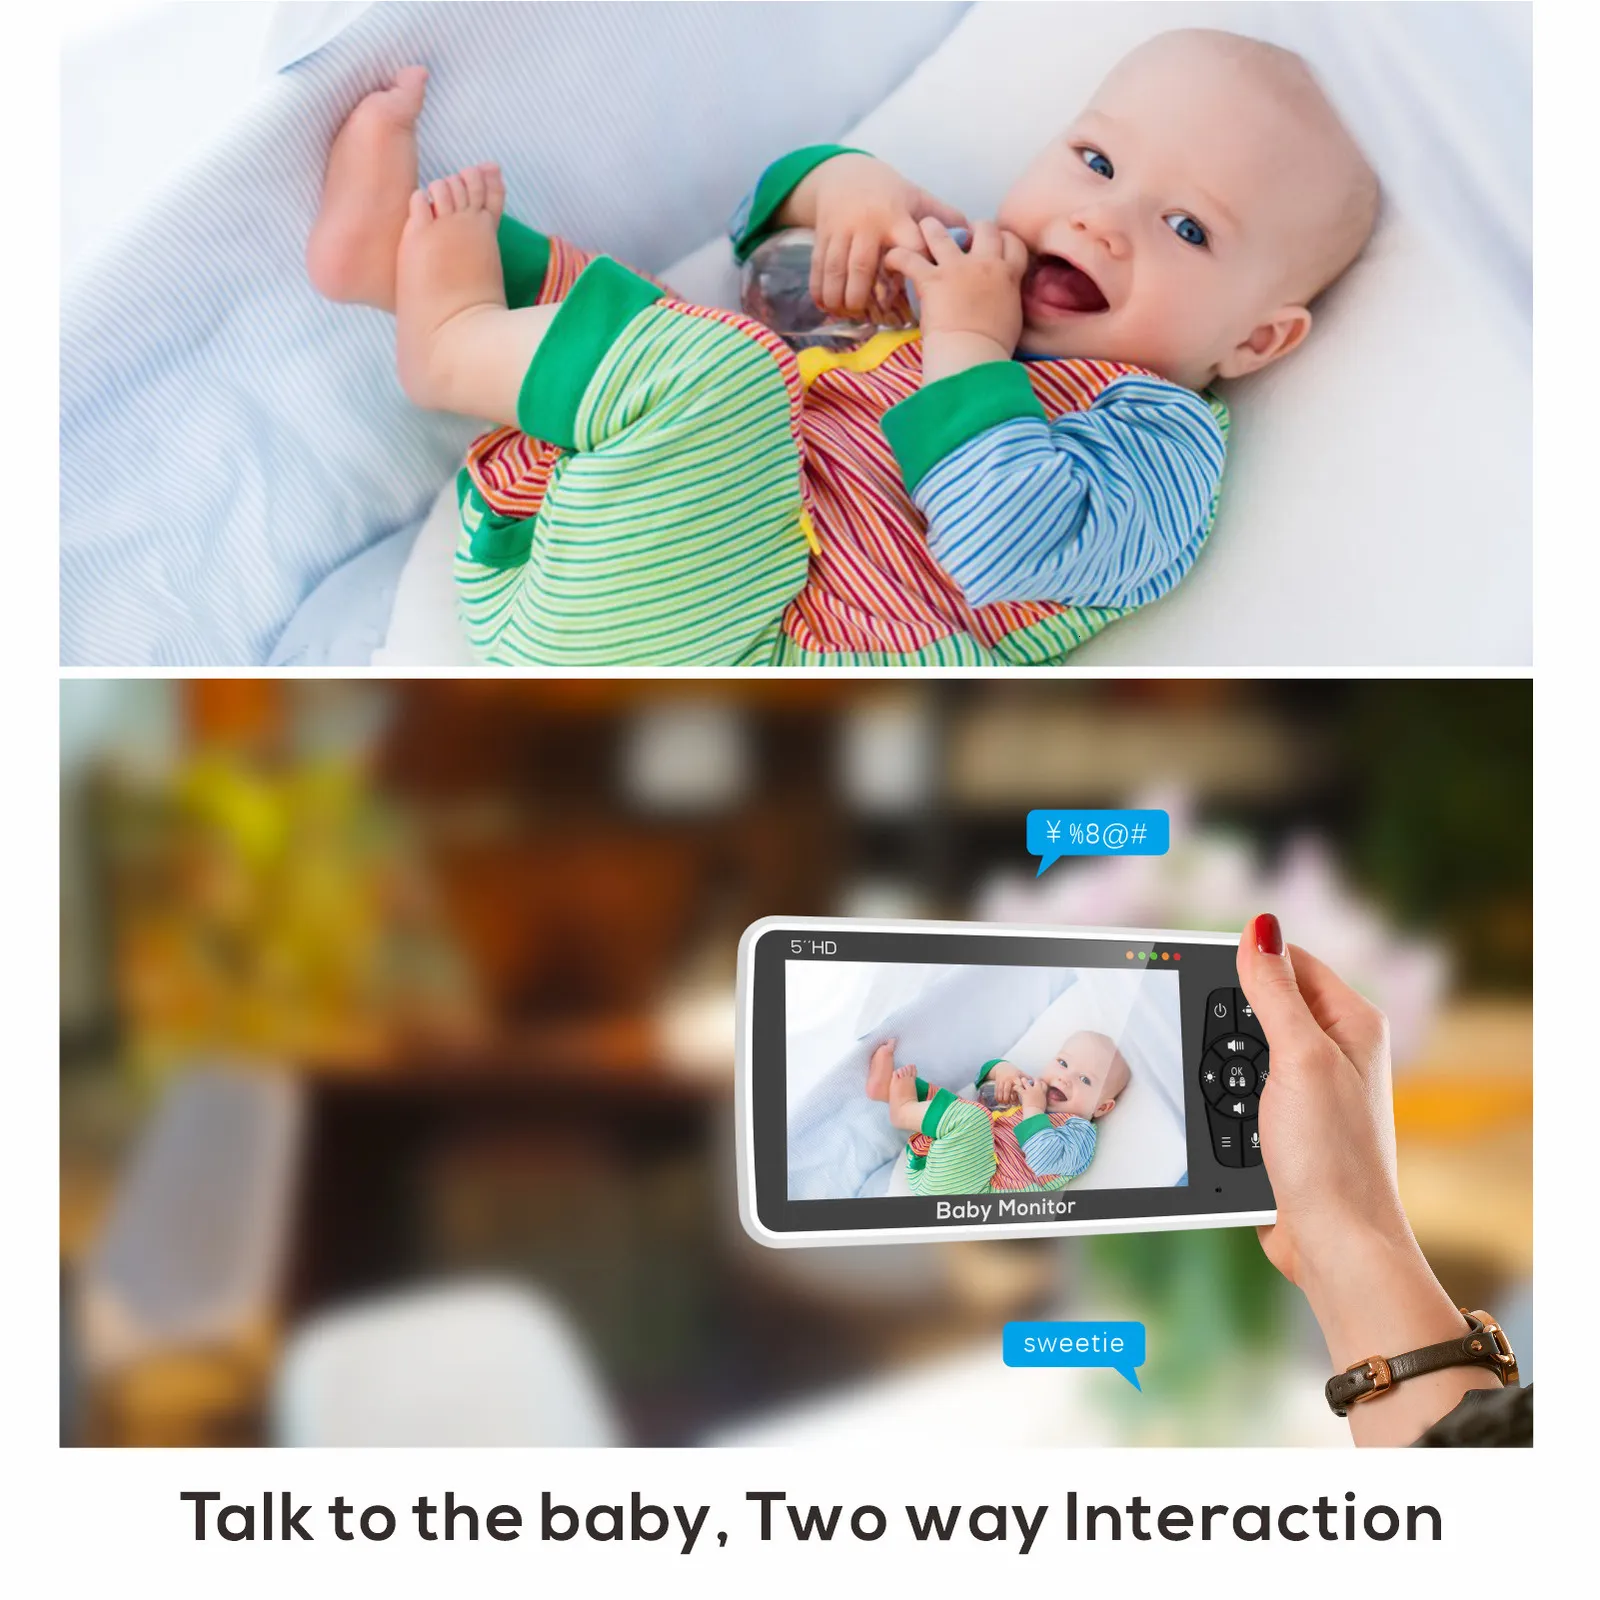  bonoch Soporte para monitor de bebé + 7 pulgadas 720P HD Video  Baby Monitor con cámara y audio sin WiFi, visión nocturna, batería de 22  horas, alcance de 1000 pies, zoom